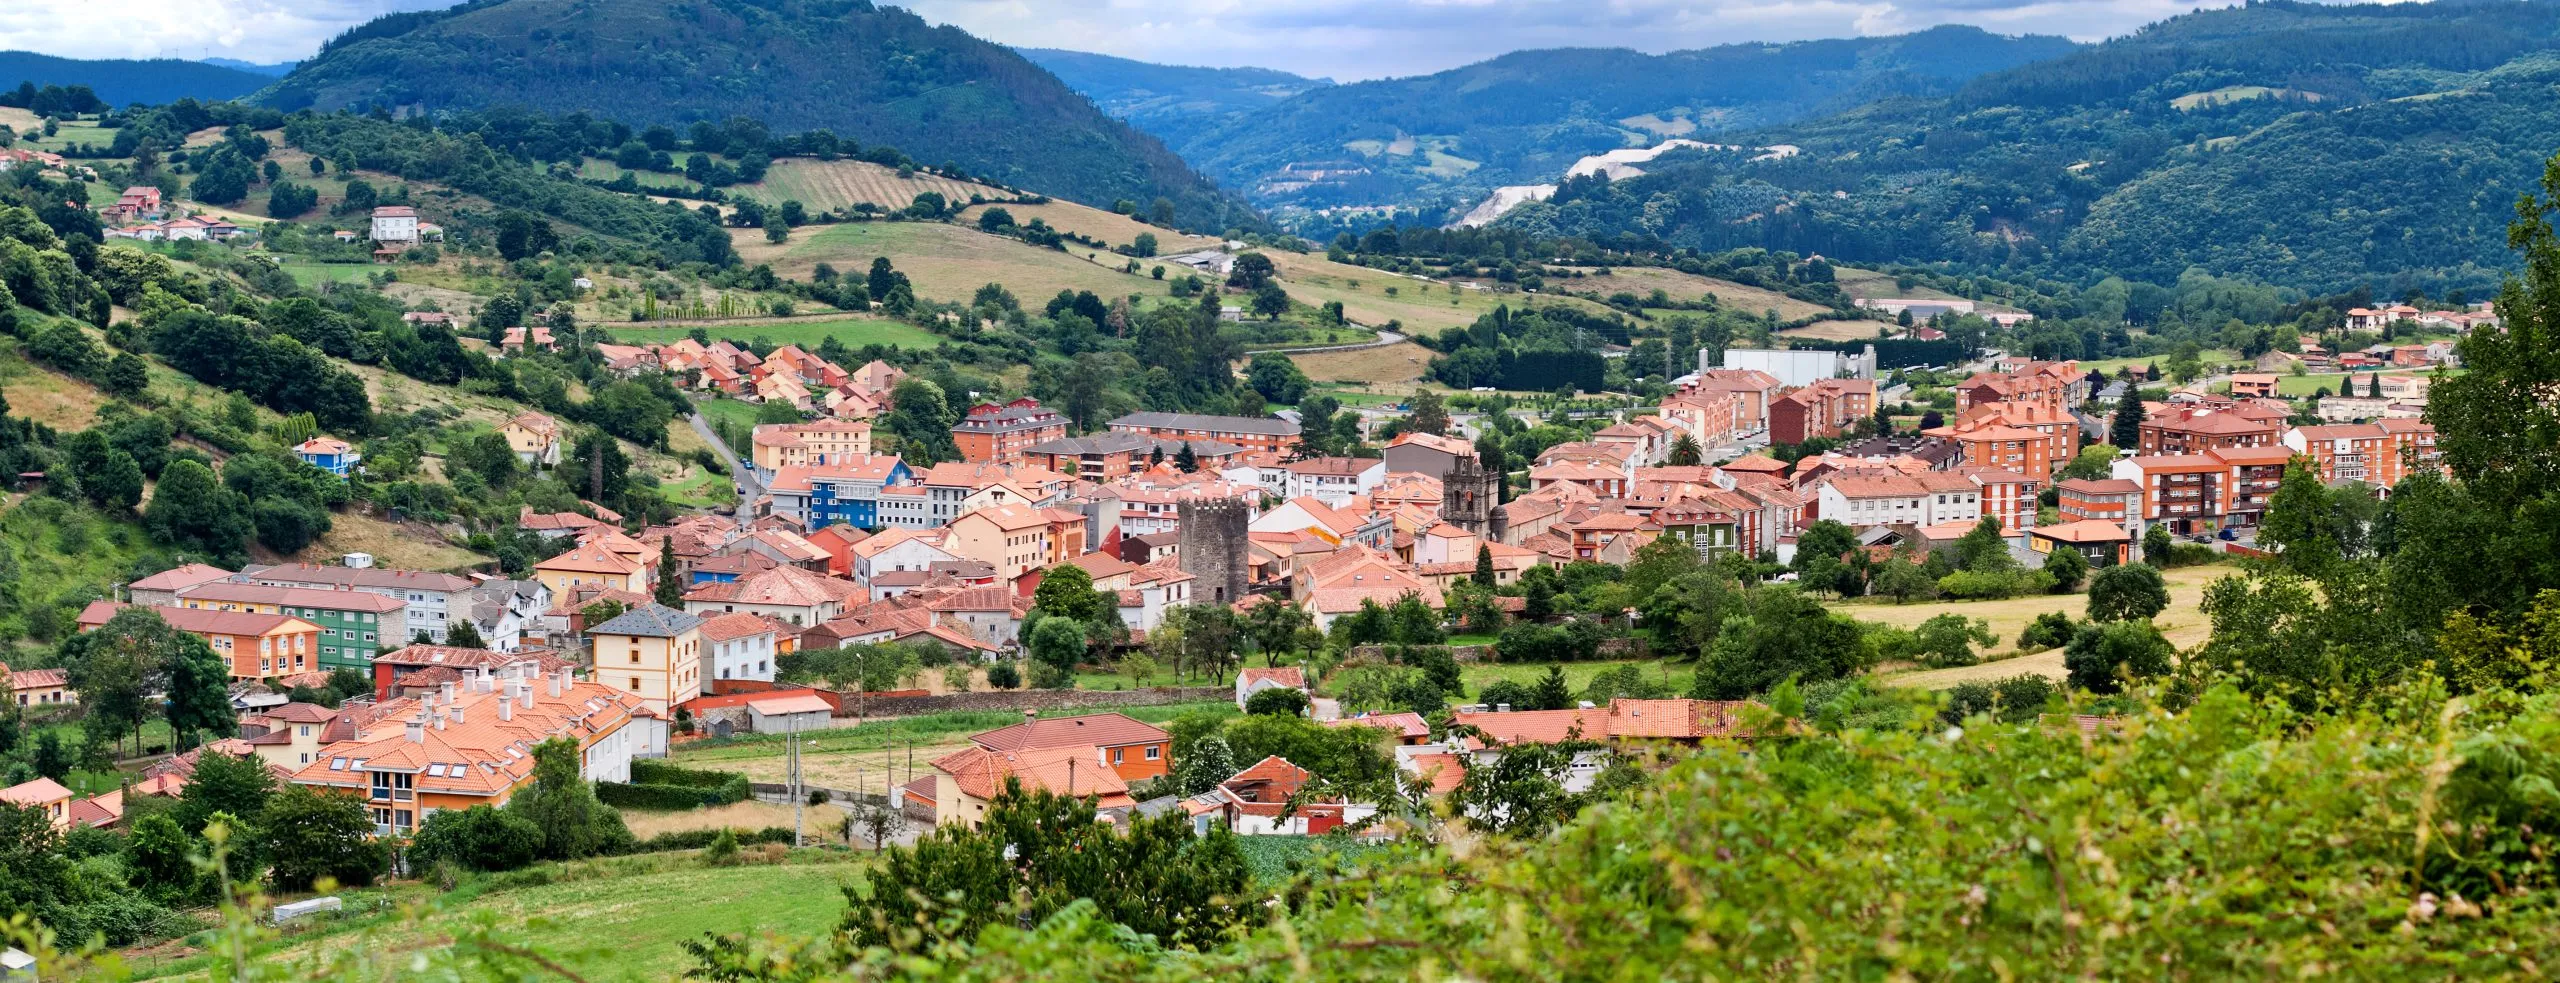 Salas, Oviedo, Asturias, Spain